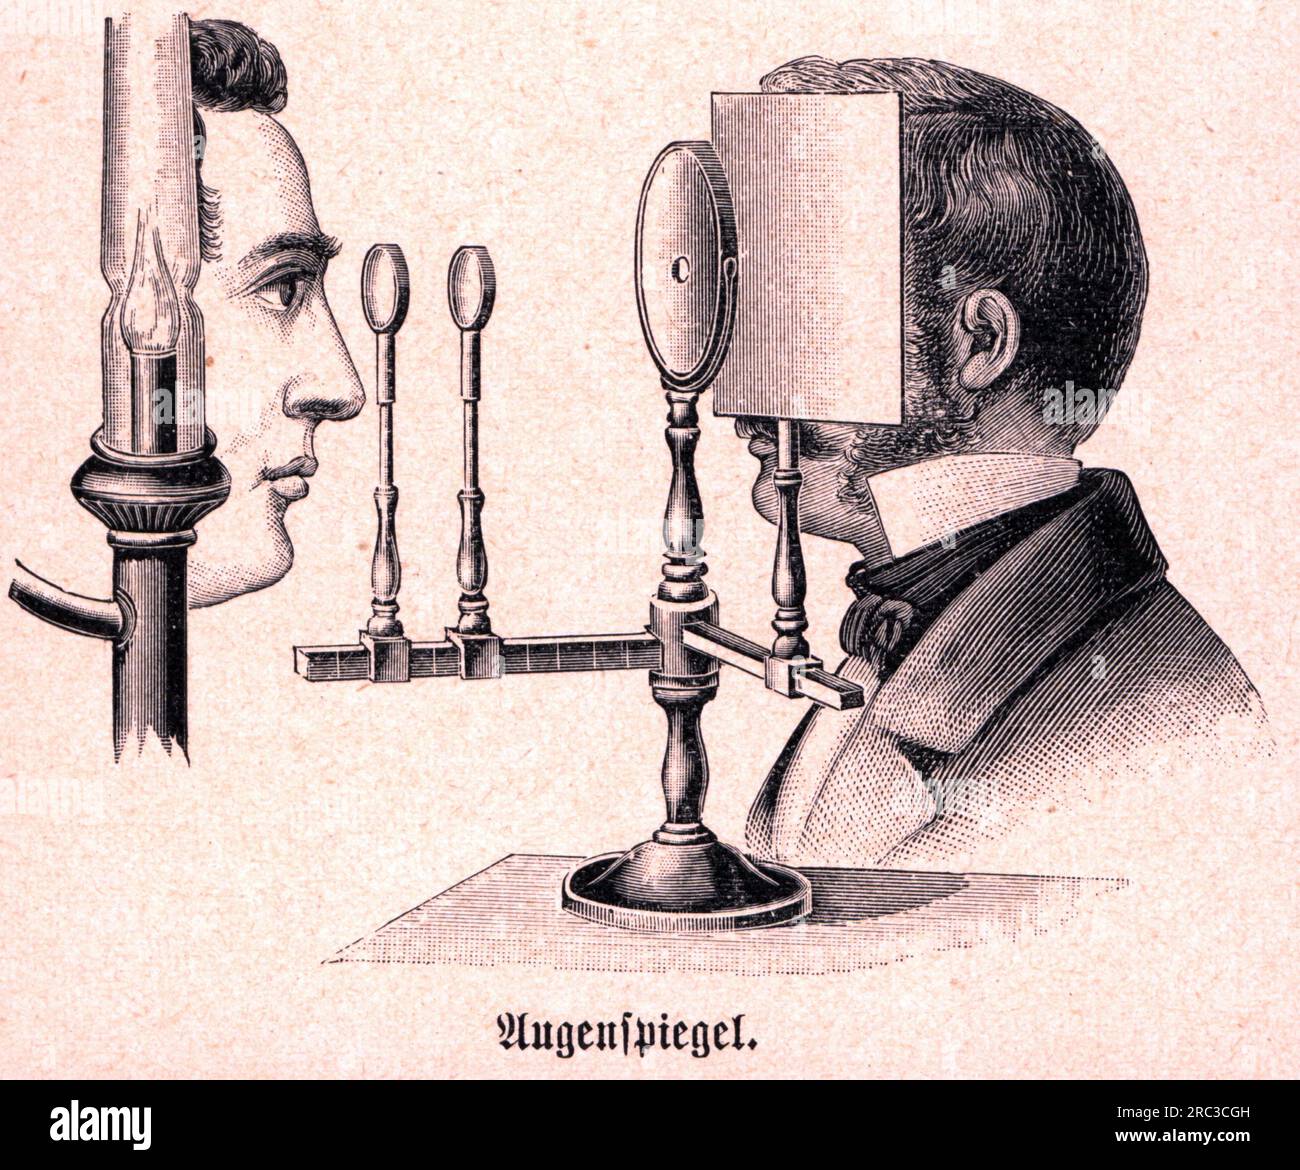 Medicina, oftalmologia, oftalmoscopio, dopo Hermann von Helmholtz, 1850 / 1851, incisione su legno, COPYRIGHT DELL'ARTISTA NON DEVE ESSERE CANCELLATO Foto Stock